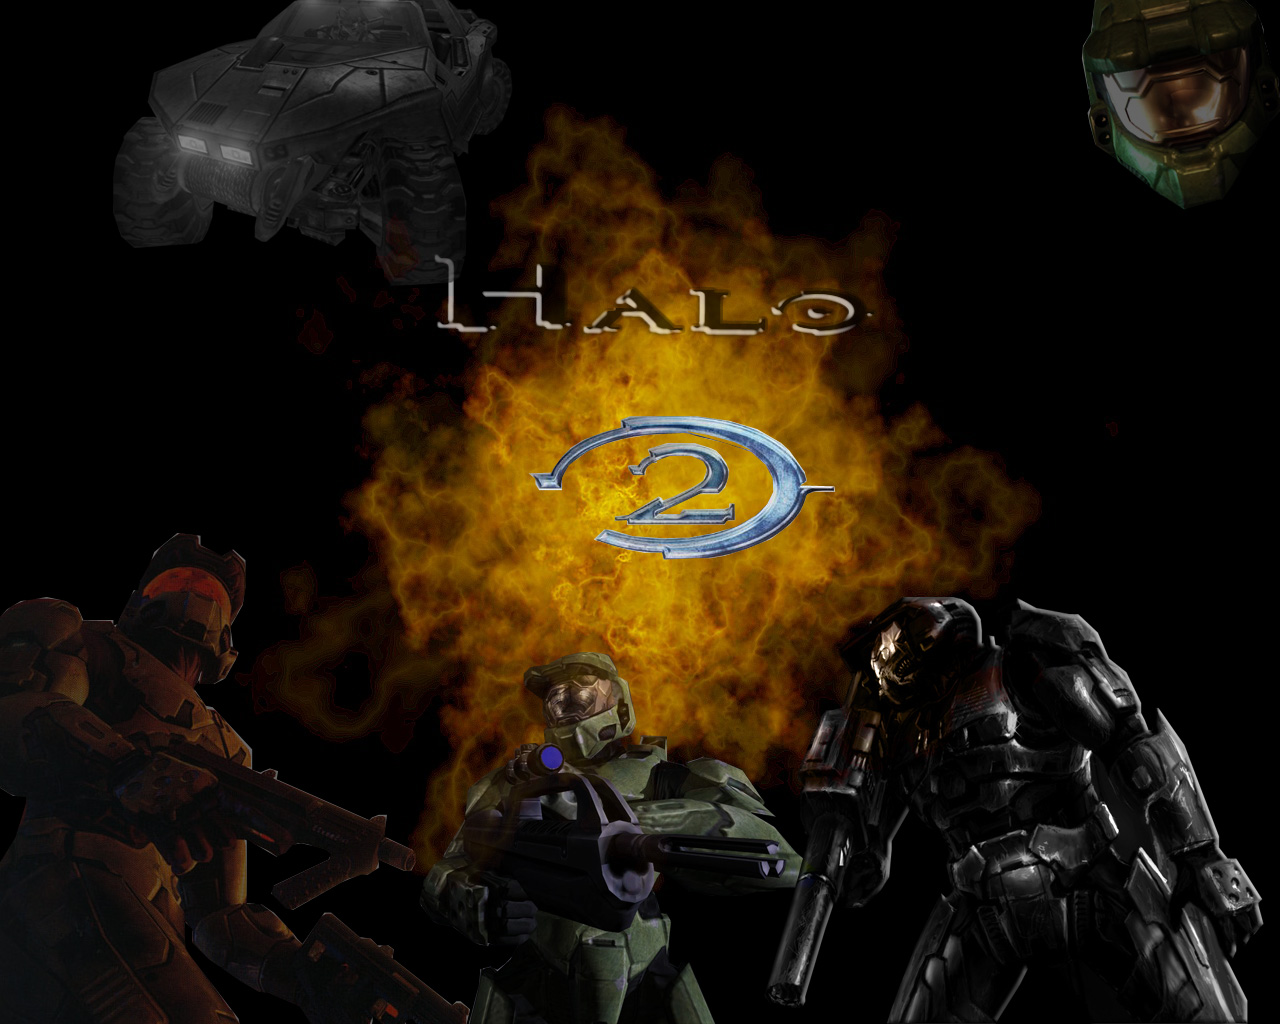 Halo 2 pic